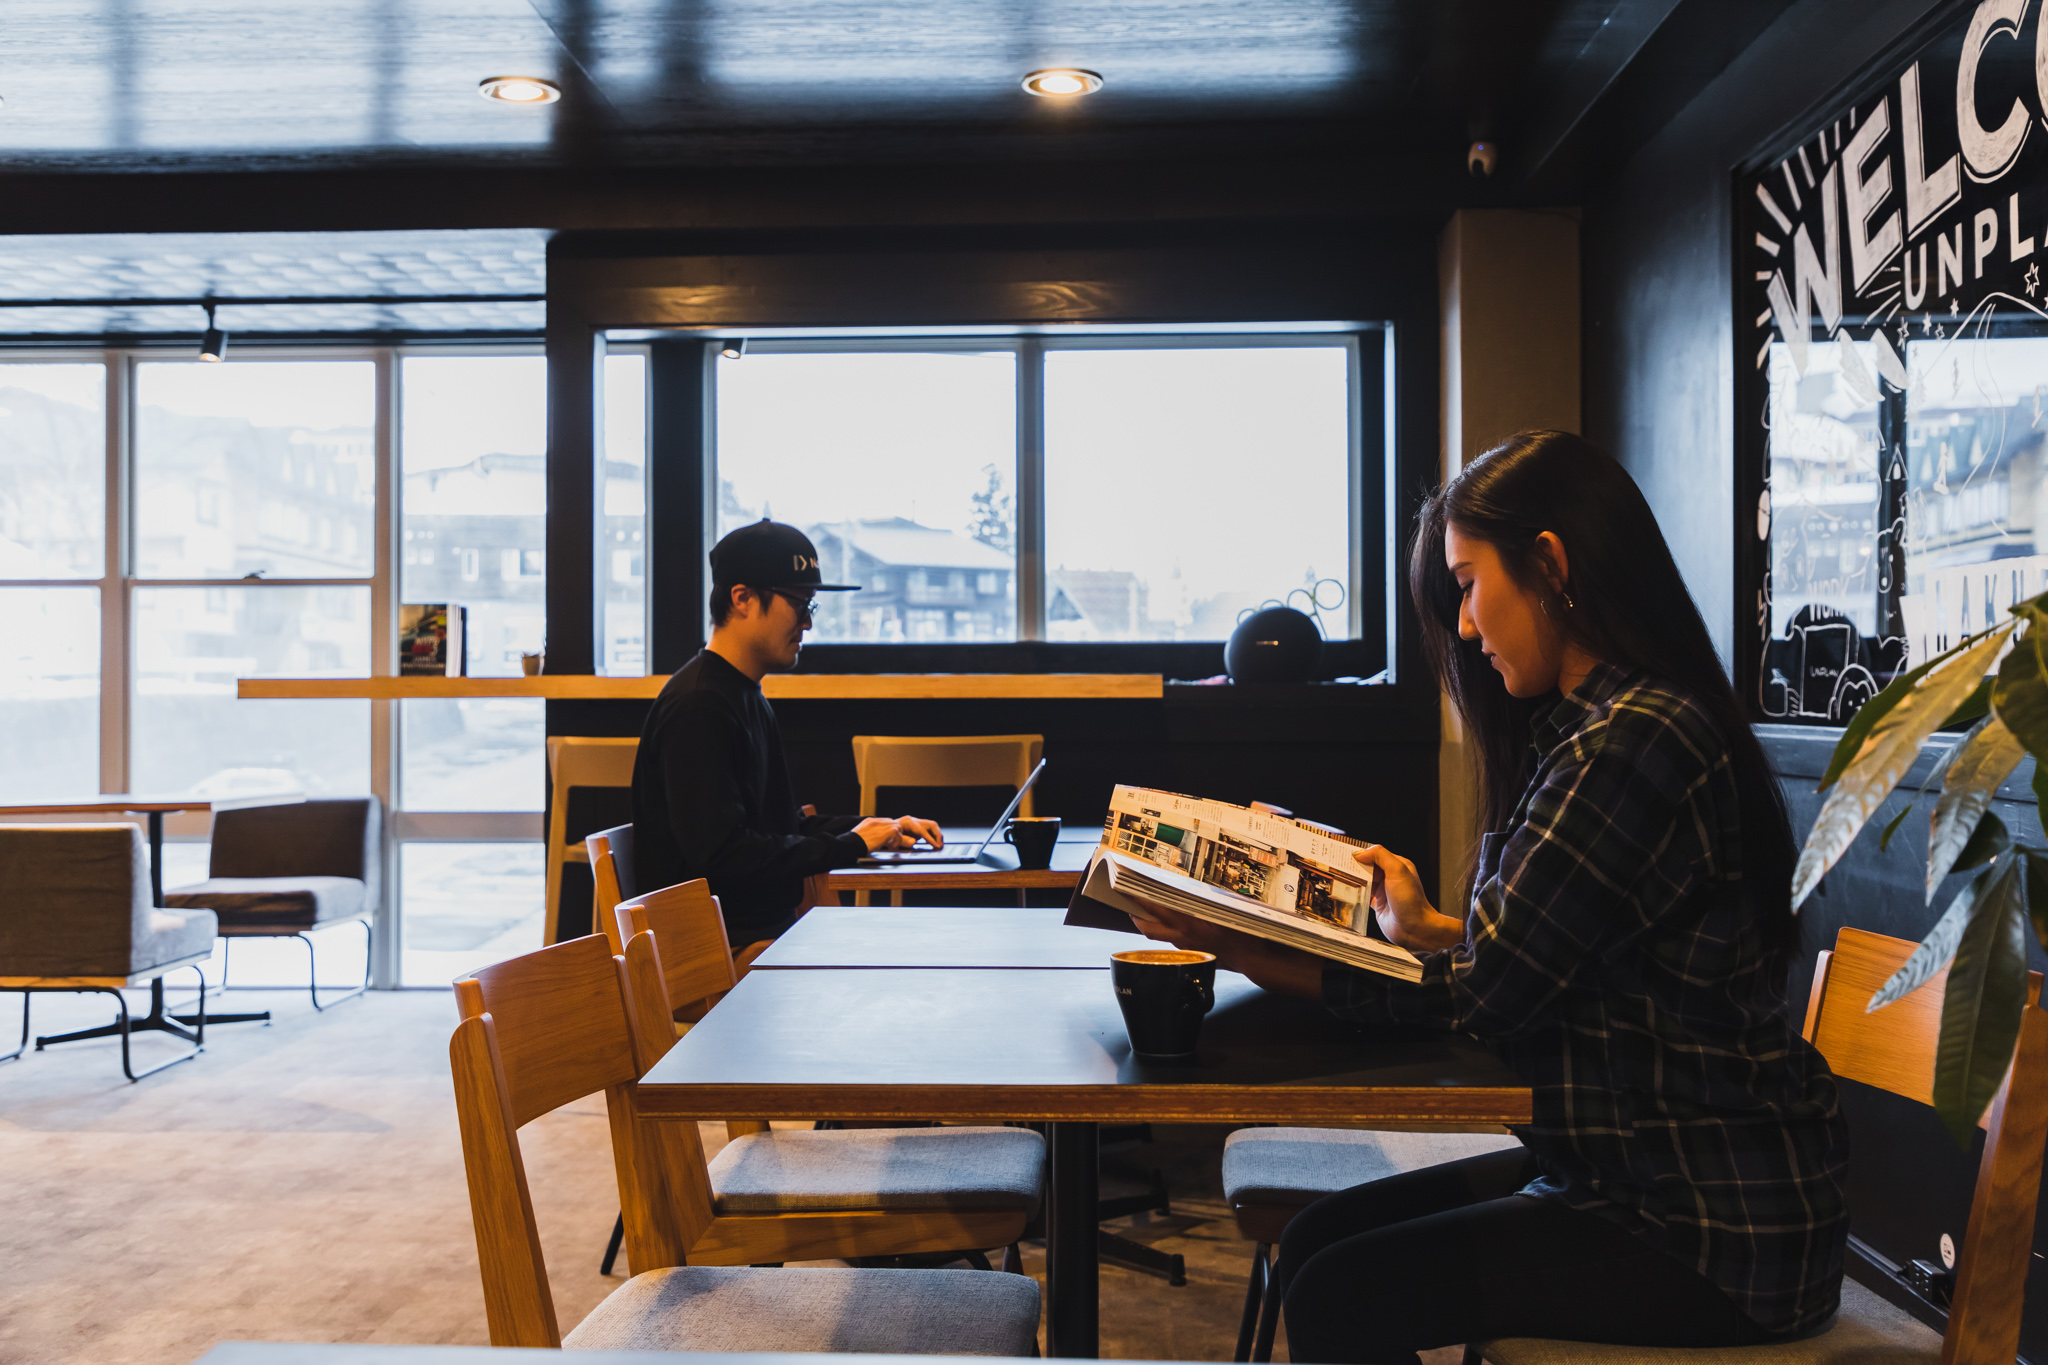 UNPLAN Village Hakuba1 の1Fにあるカフェスペース。落ち着いた雰囲気で24時間ご利用いただけます。もちろん、仕事をすることも可能です。音楽が流れていたり、人の往来も多いので、人の気配を感じながら仕事をしたいときにおすすめ。